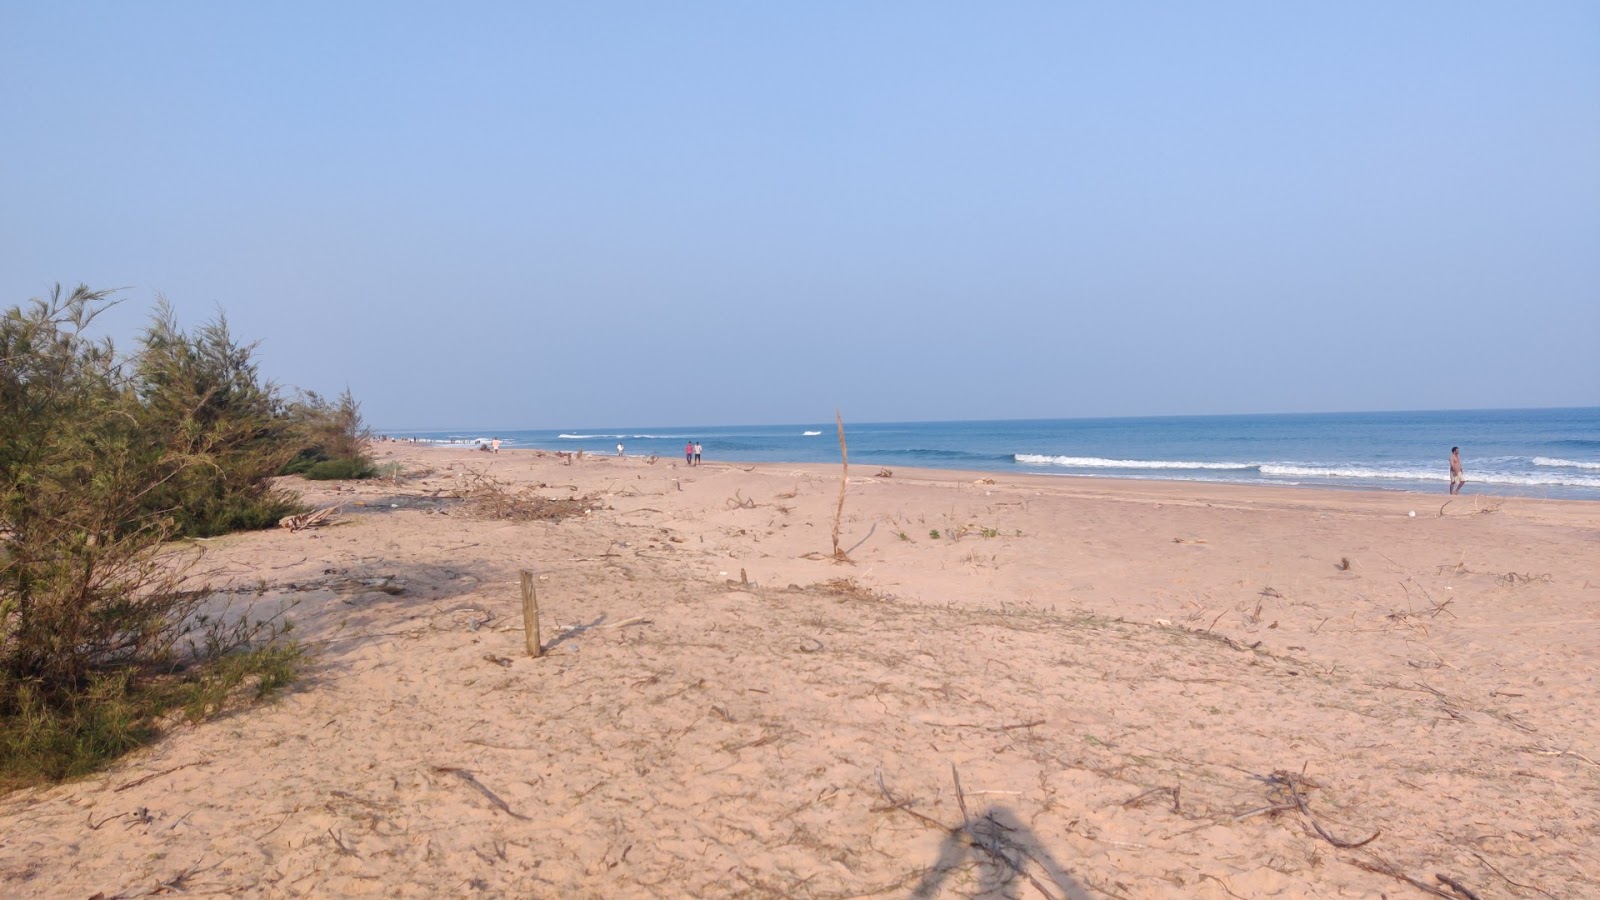 Rajaram Puram Beach'in fotoğrafı parlak kum yüzey ile